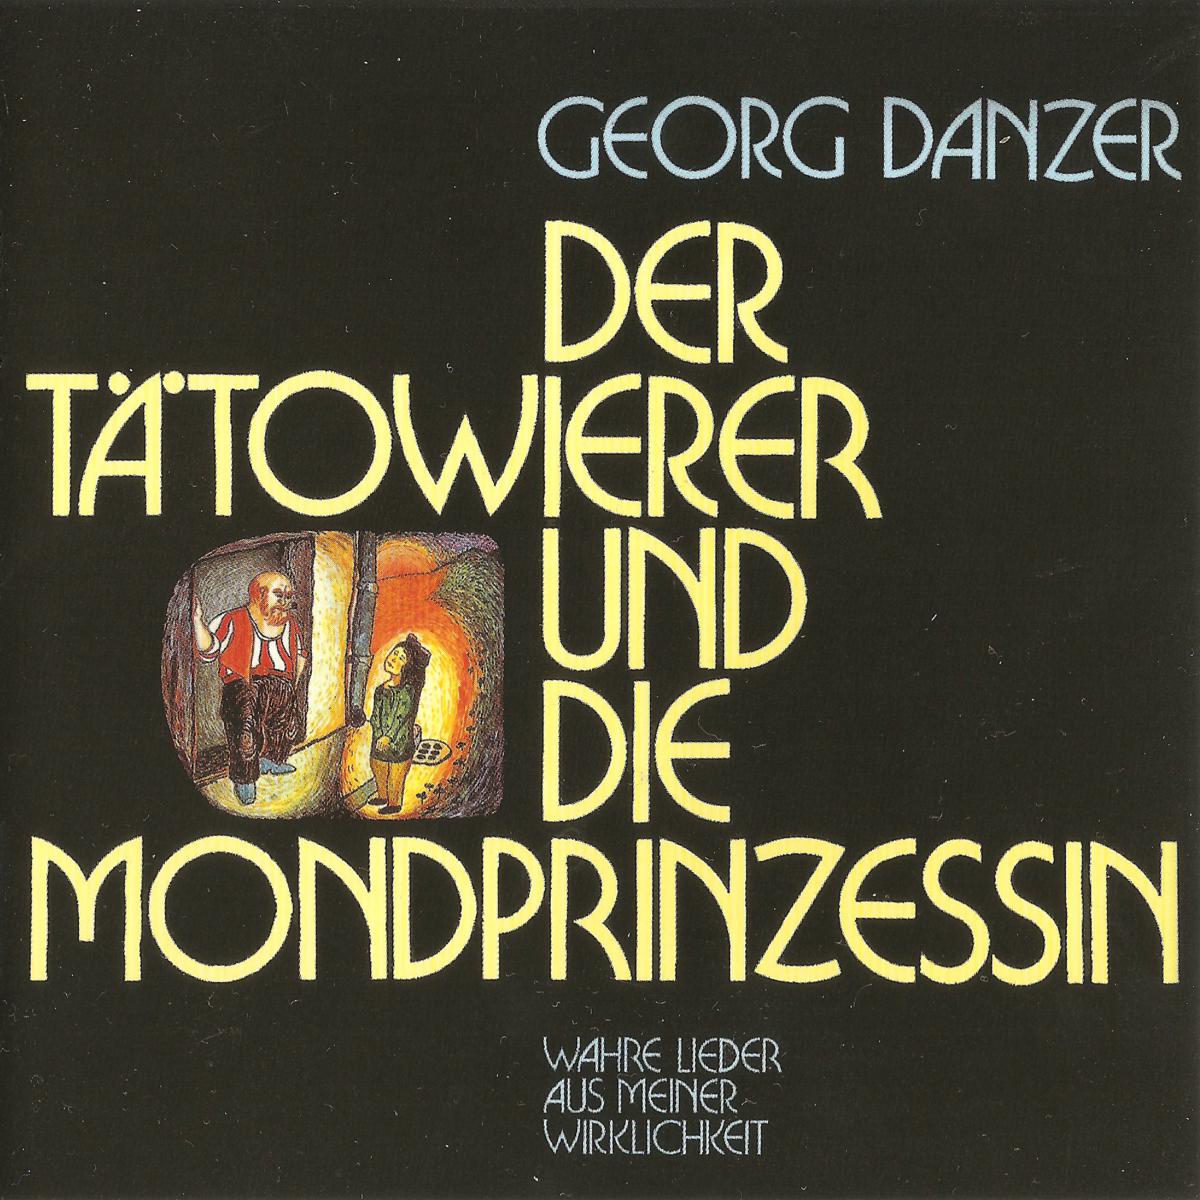 Georg Danzer Der Tatowierer Und Die Mondprinzessin Hitparade Ch